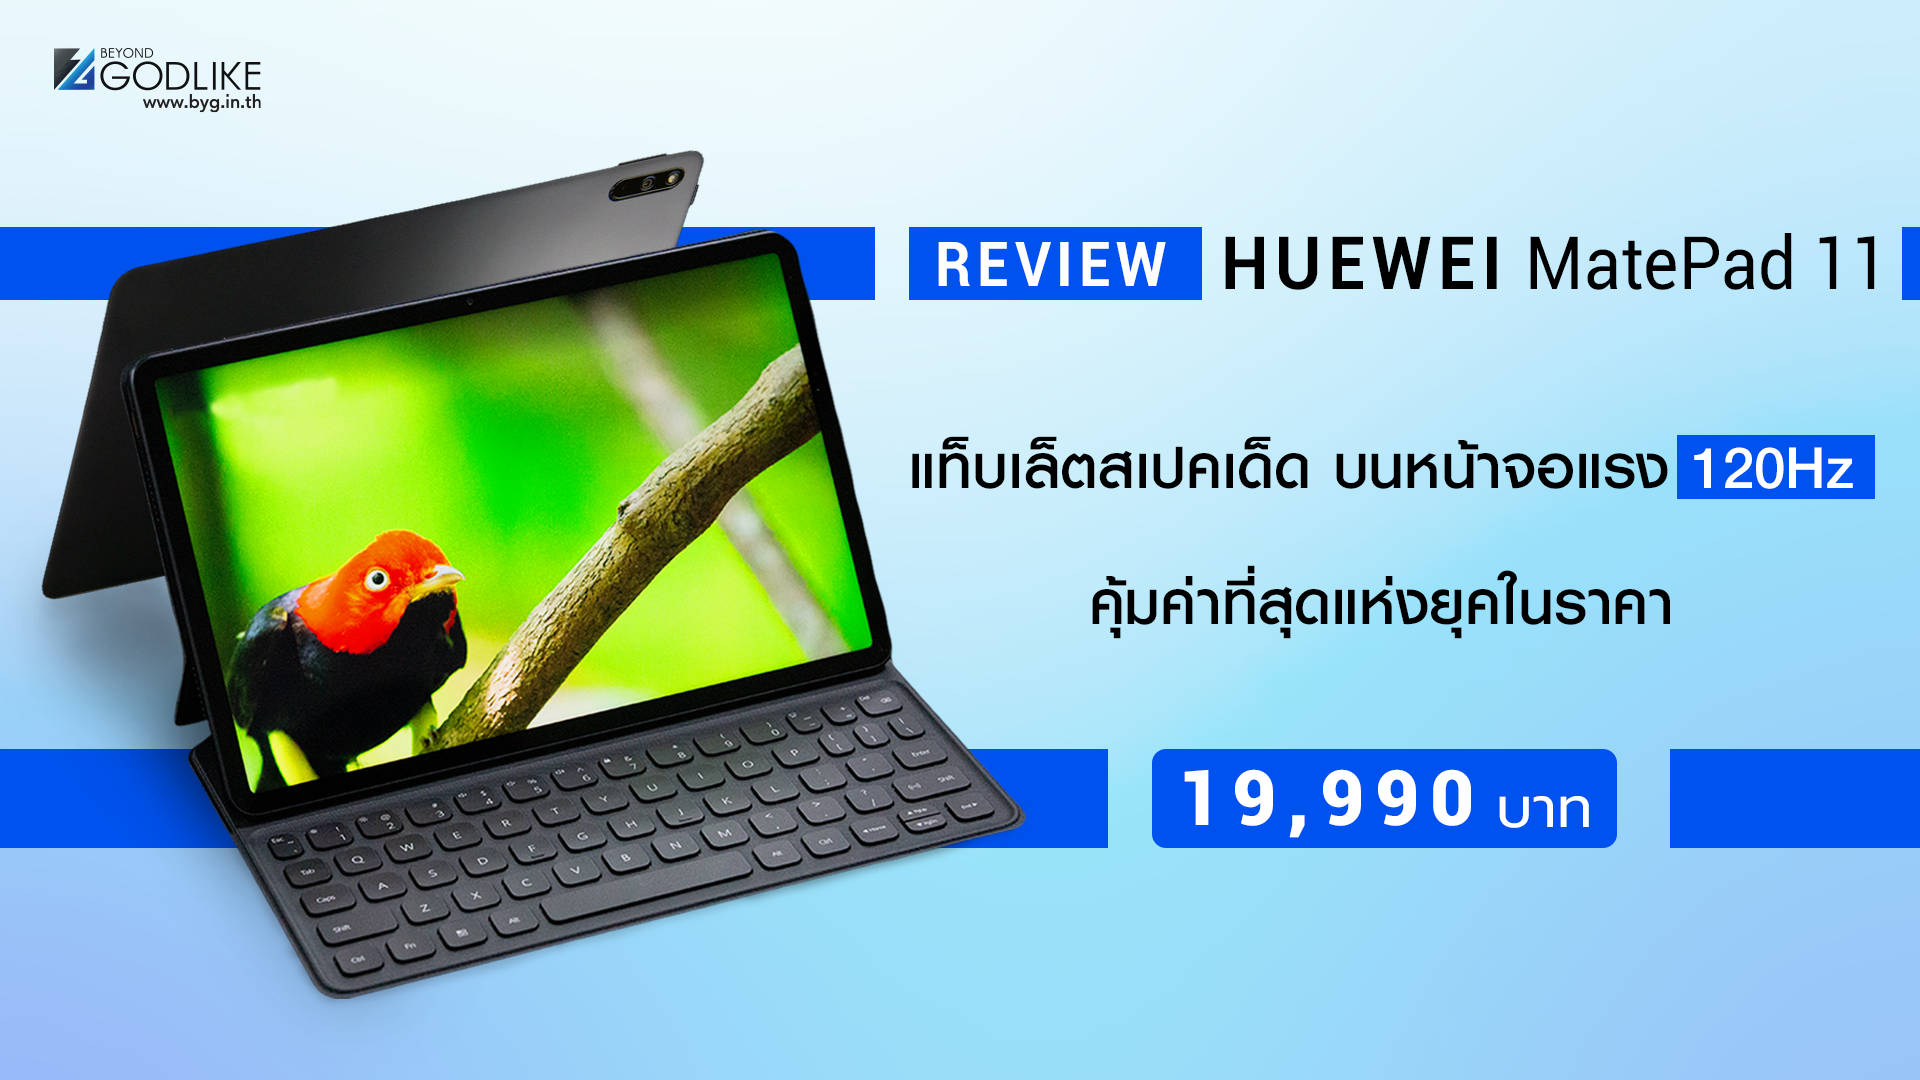 [Review] HUAWEI MatePad 11 แท็บเล็ตสเปคเด็ด บนหน้าจอแรง 120Hz คุ้มค่าที่สุดแห่งยุคในราคา 19,990 บาท